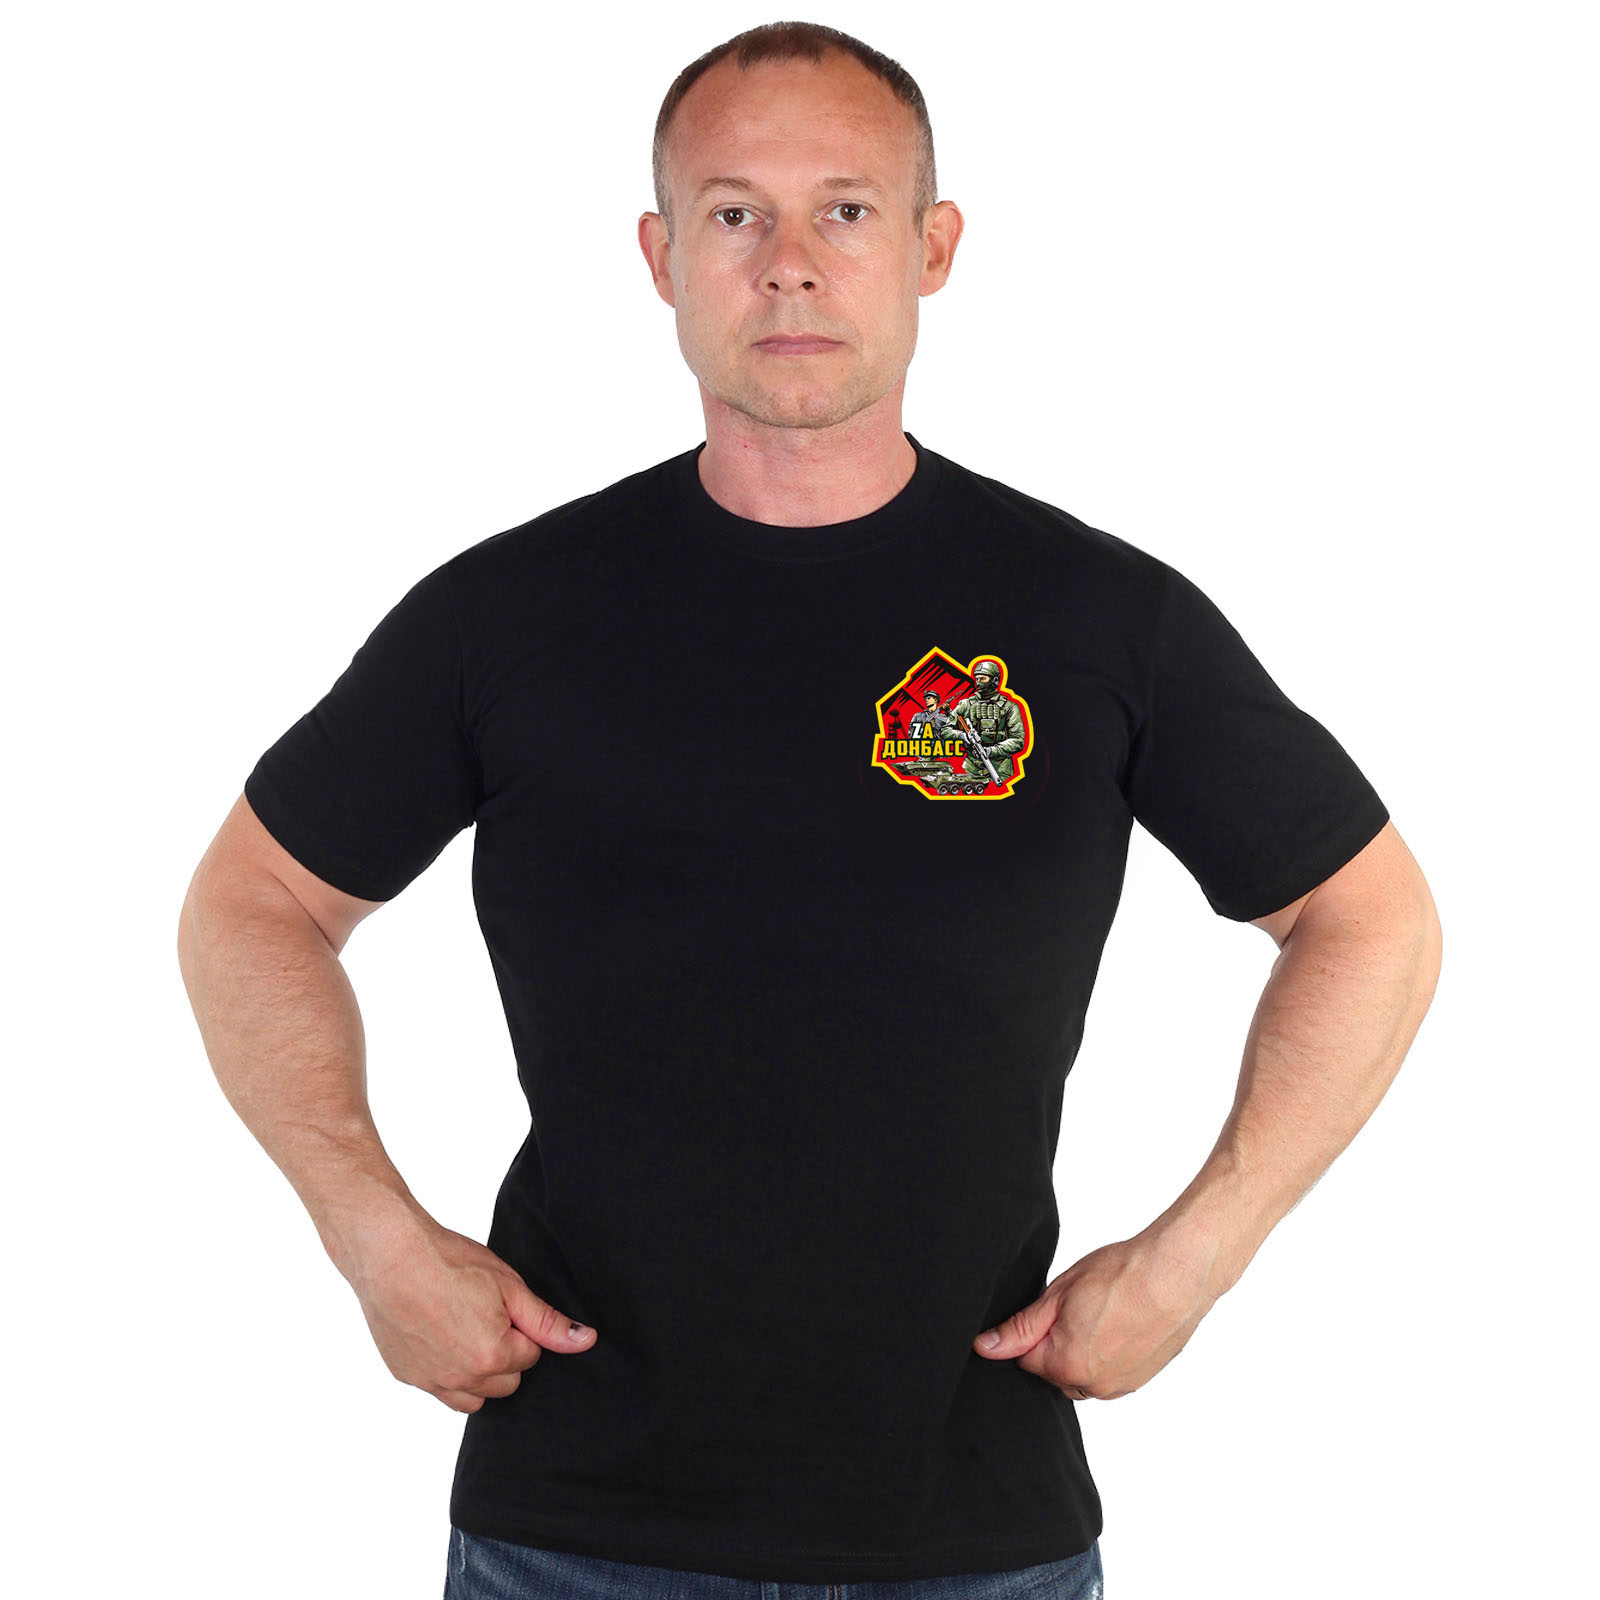 Купить в интернете футболку Zа Донбасс